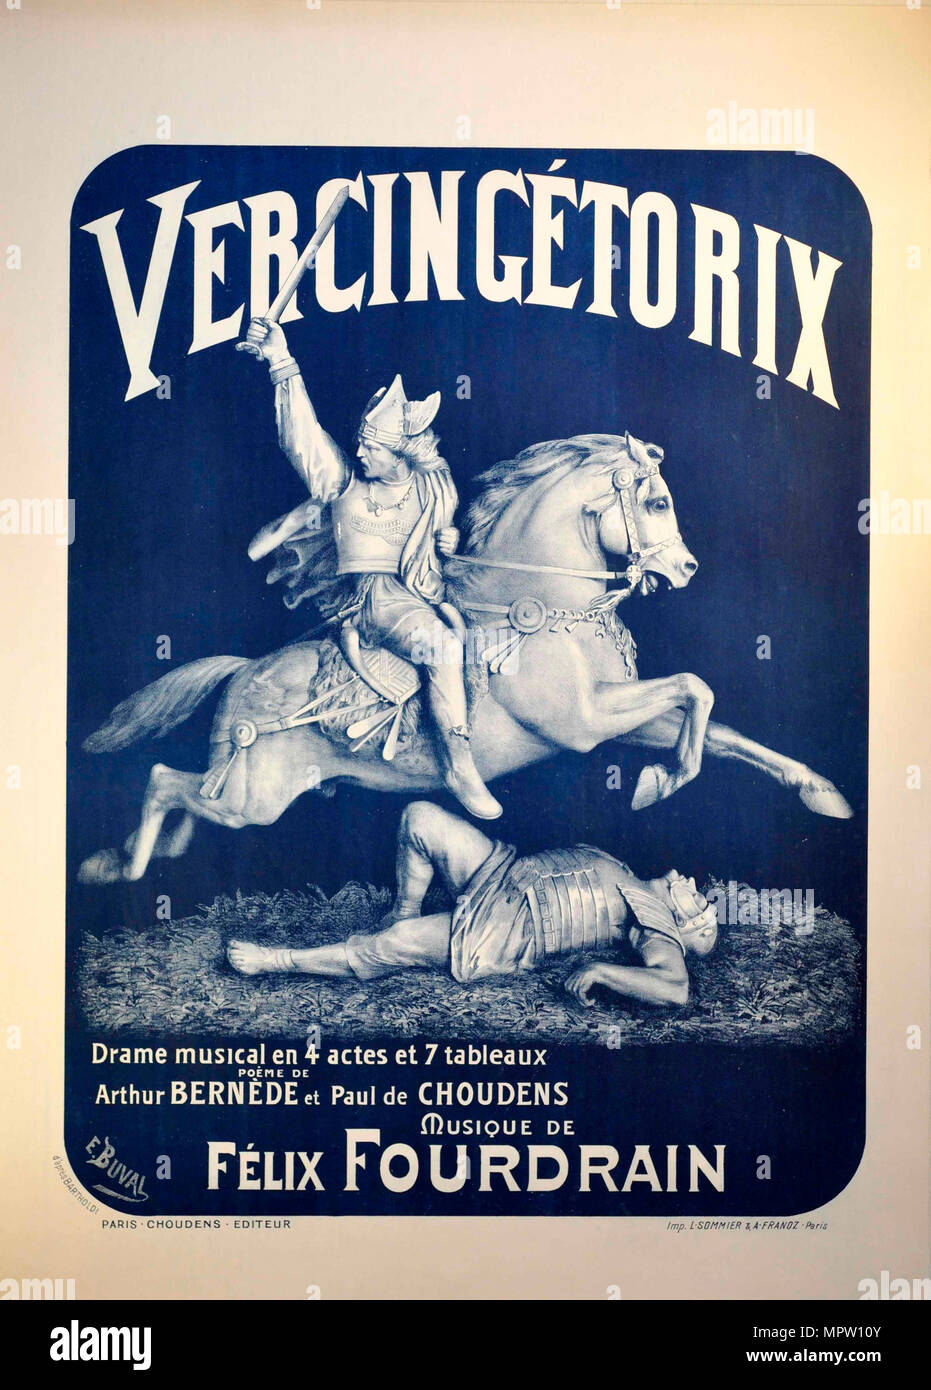 Affiche pour l'Opéra Vercingétorix par Félix Fourdrain, 1912. Banque D'Images